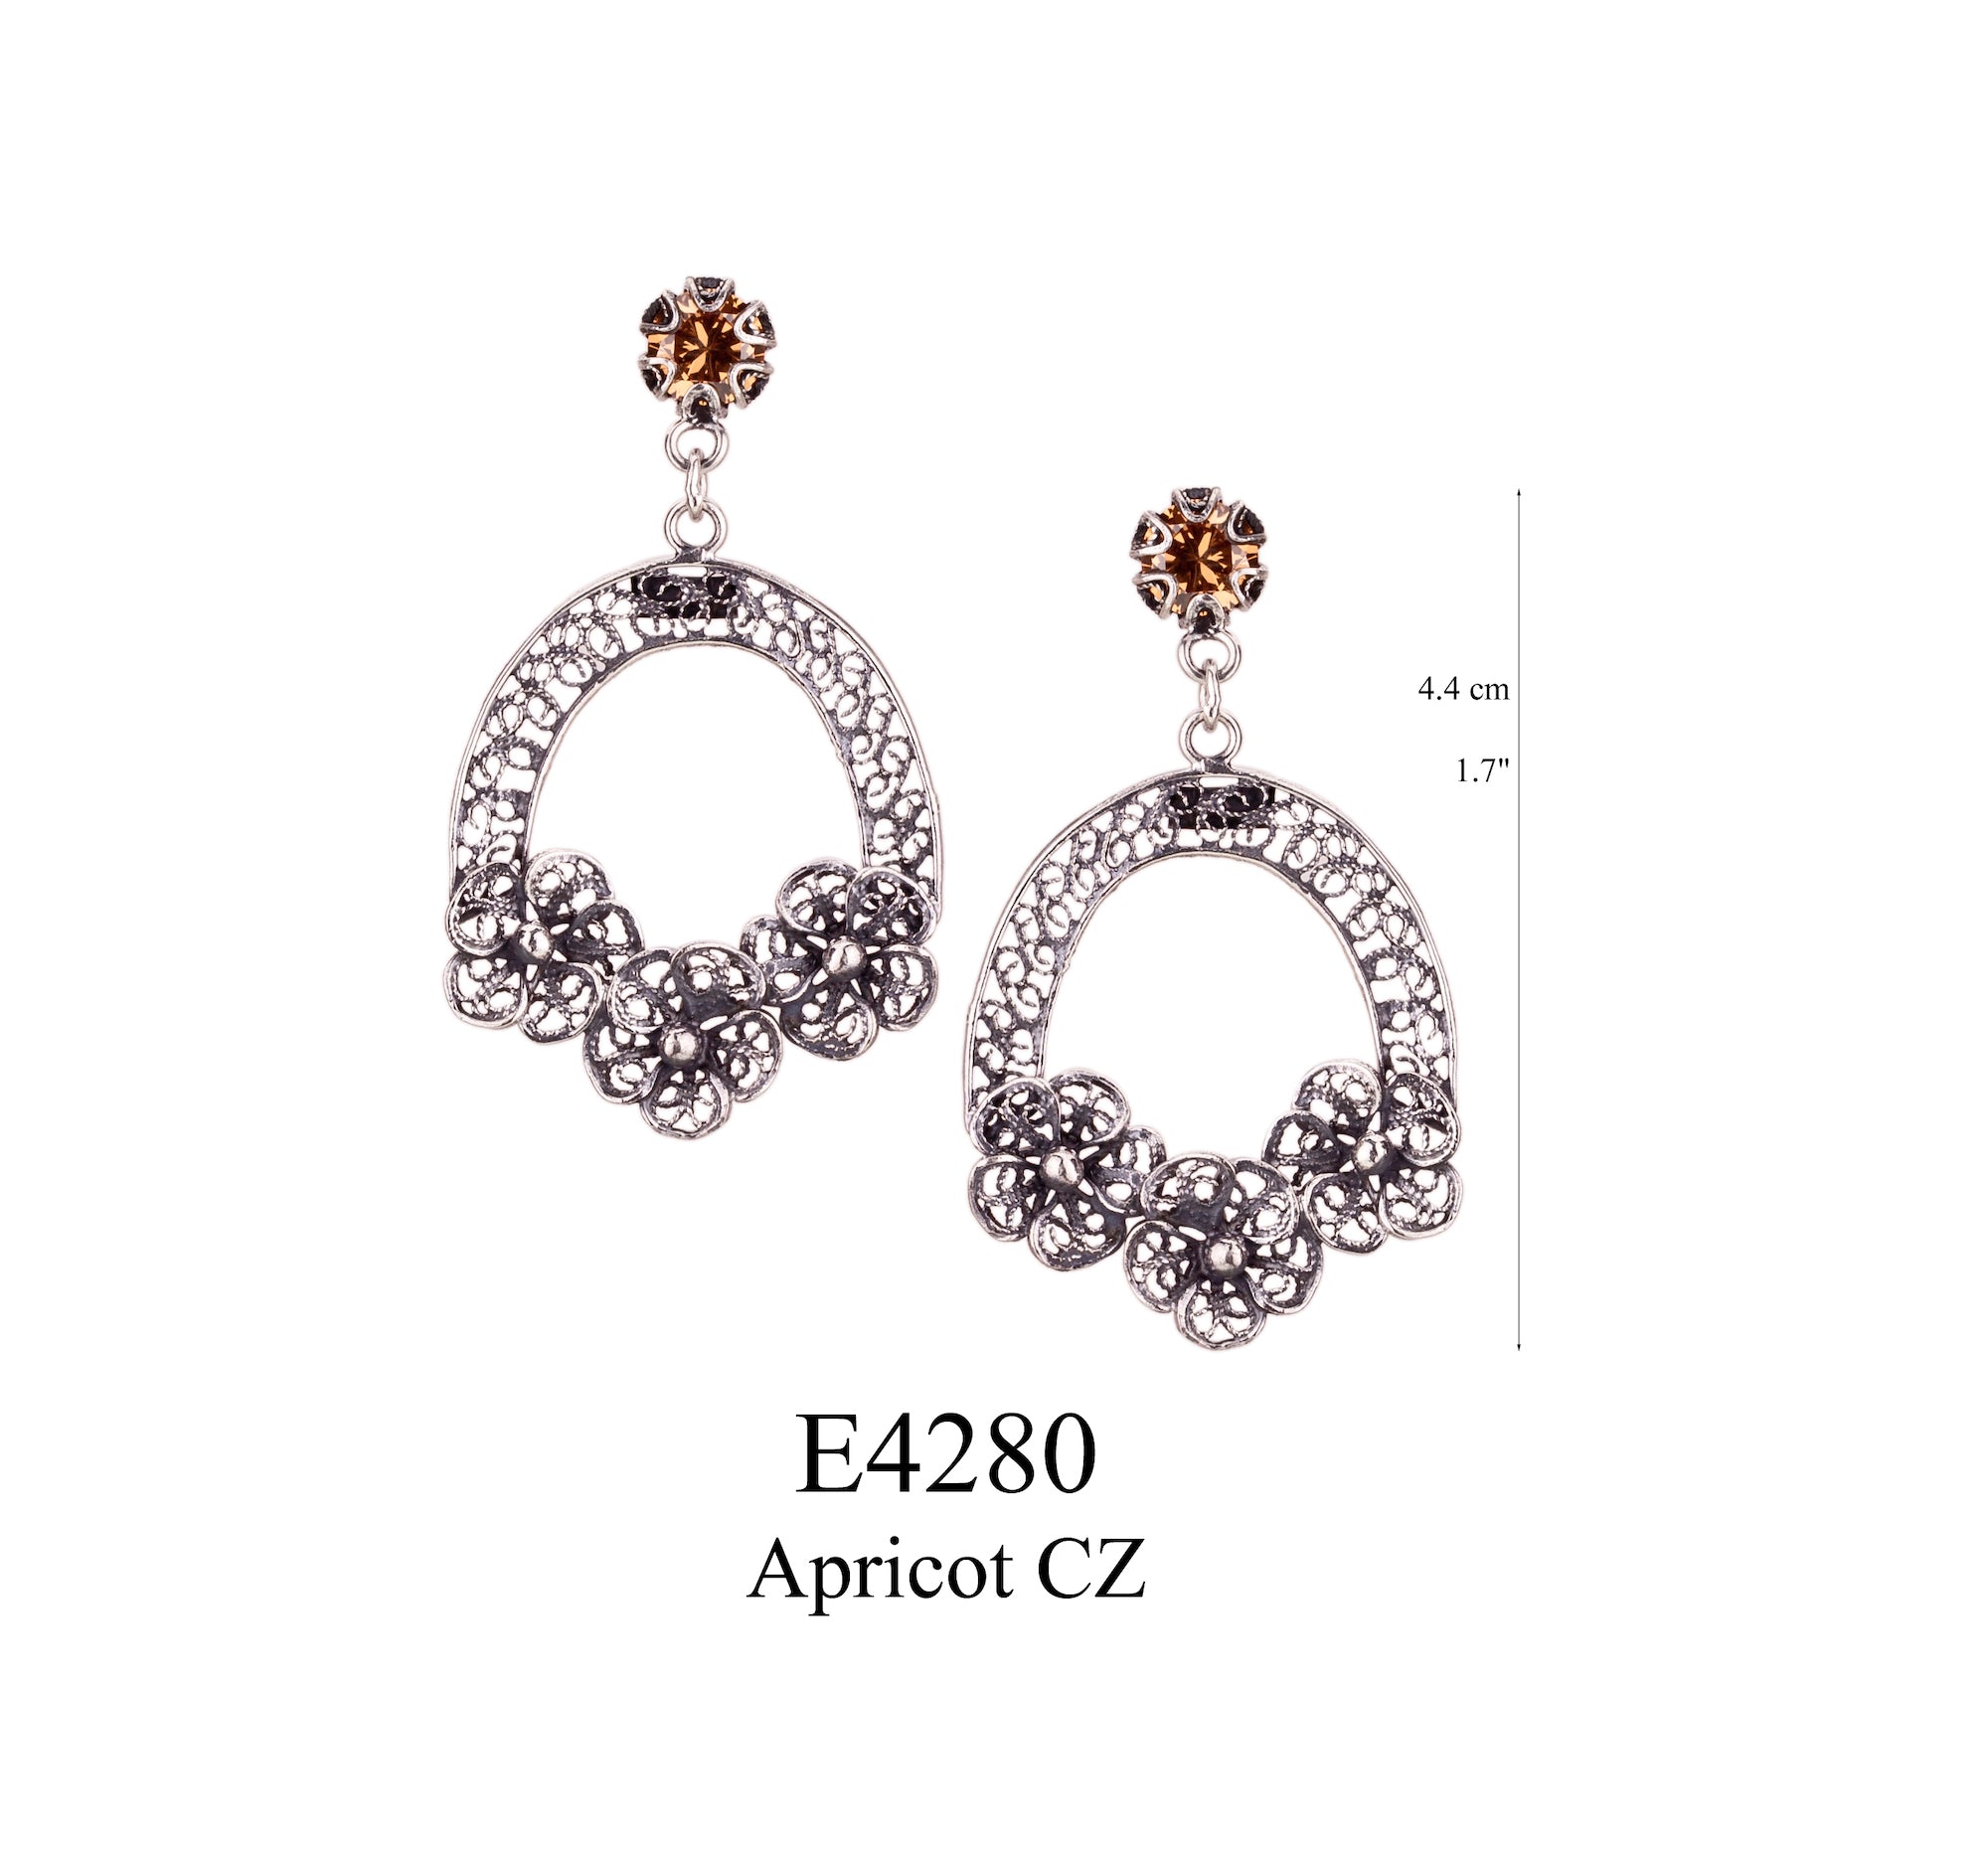 Edelweiss Earrings - Apricot CZ ✿